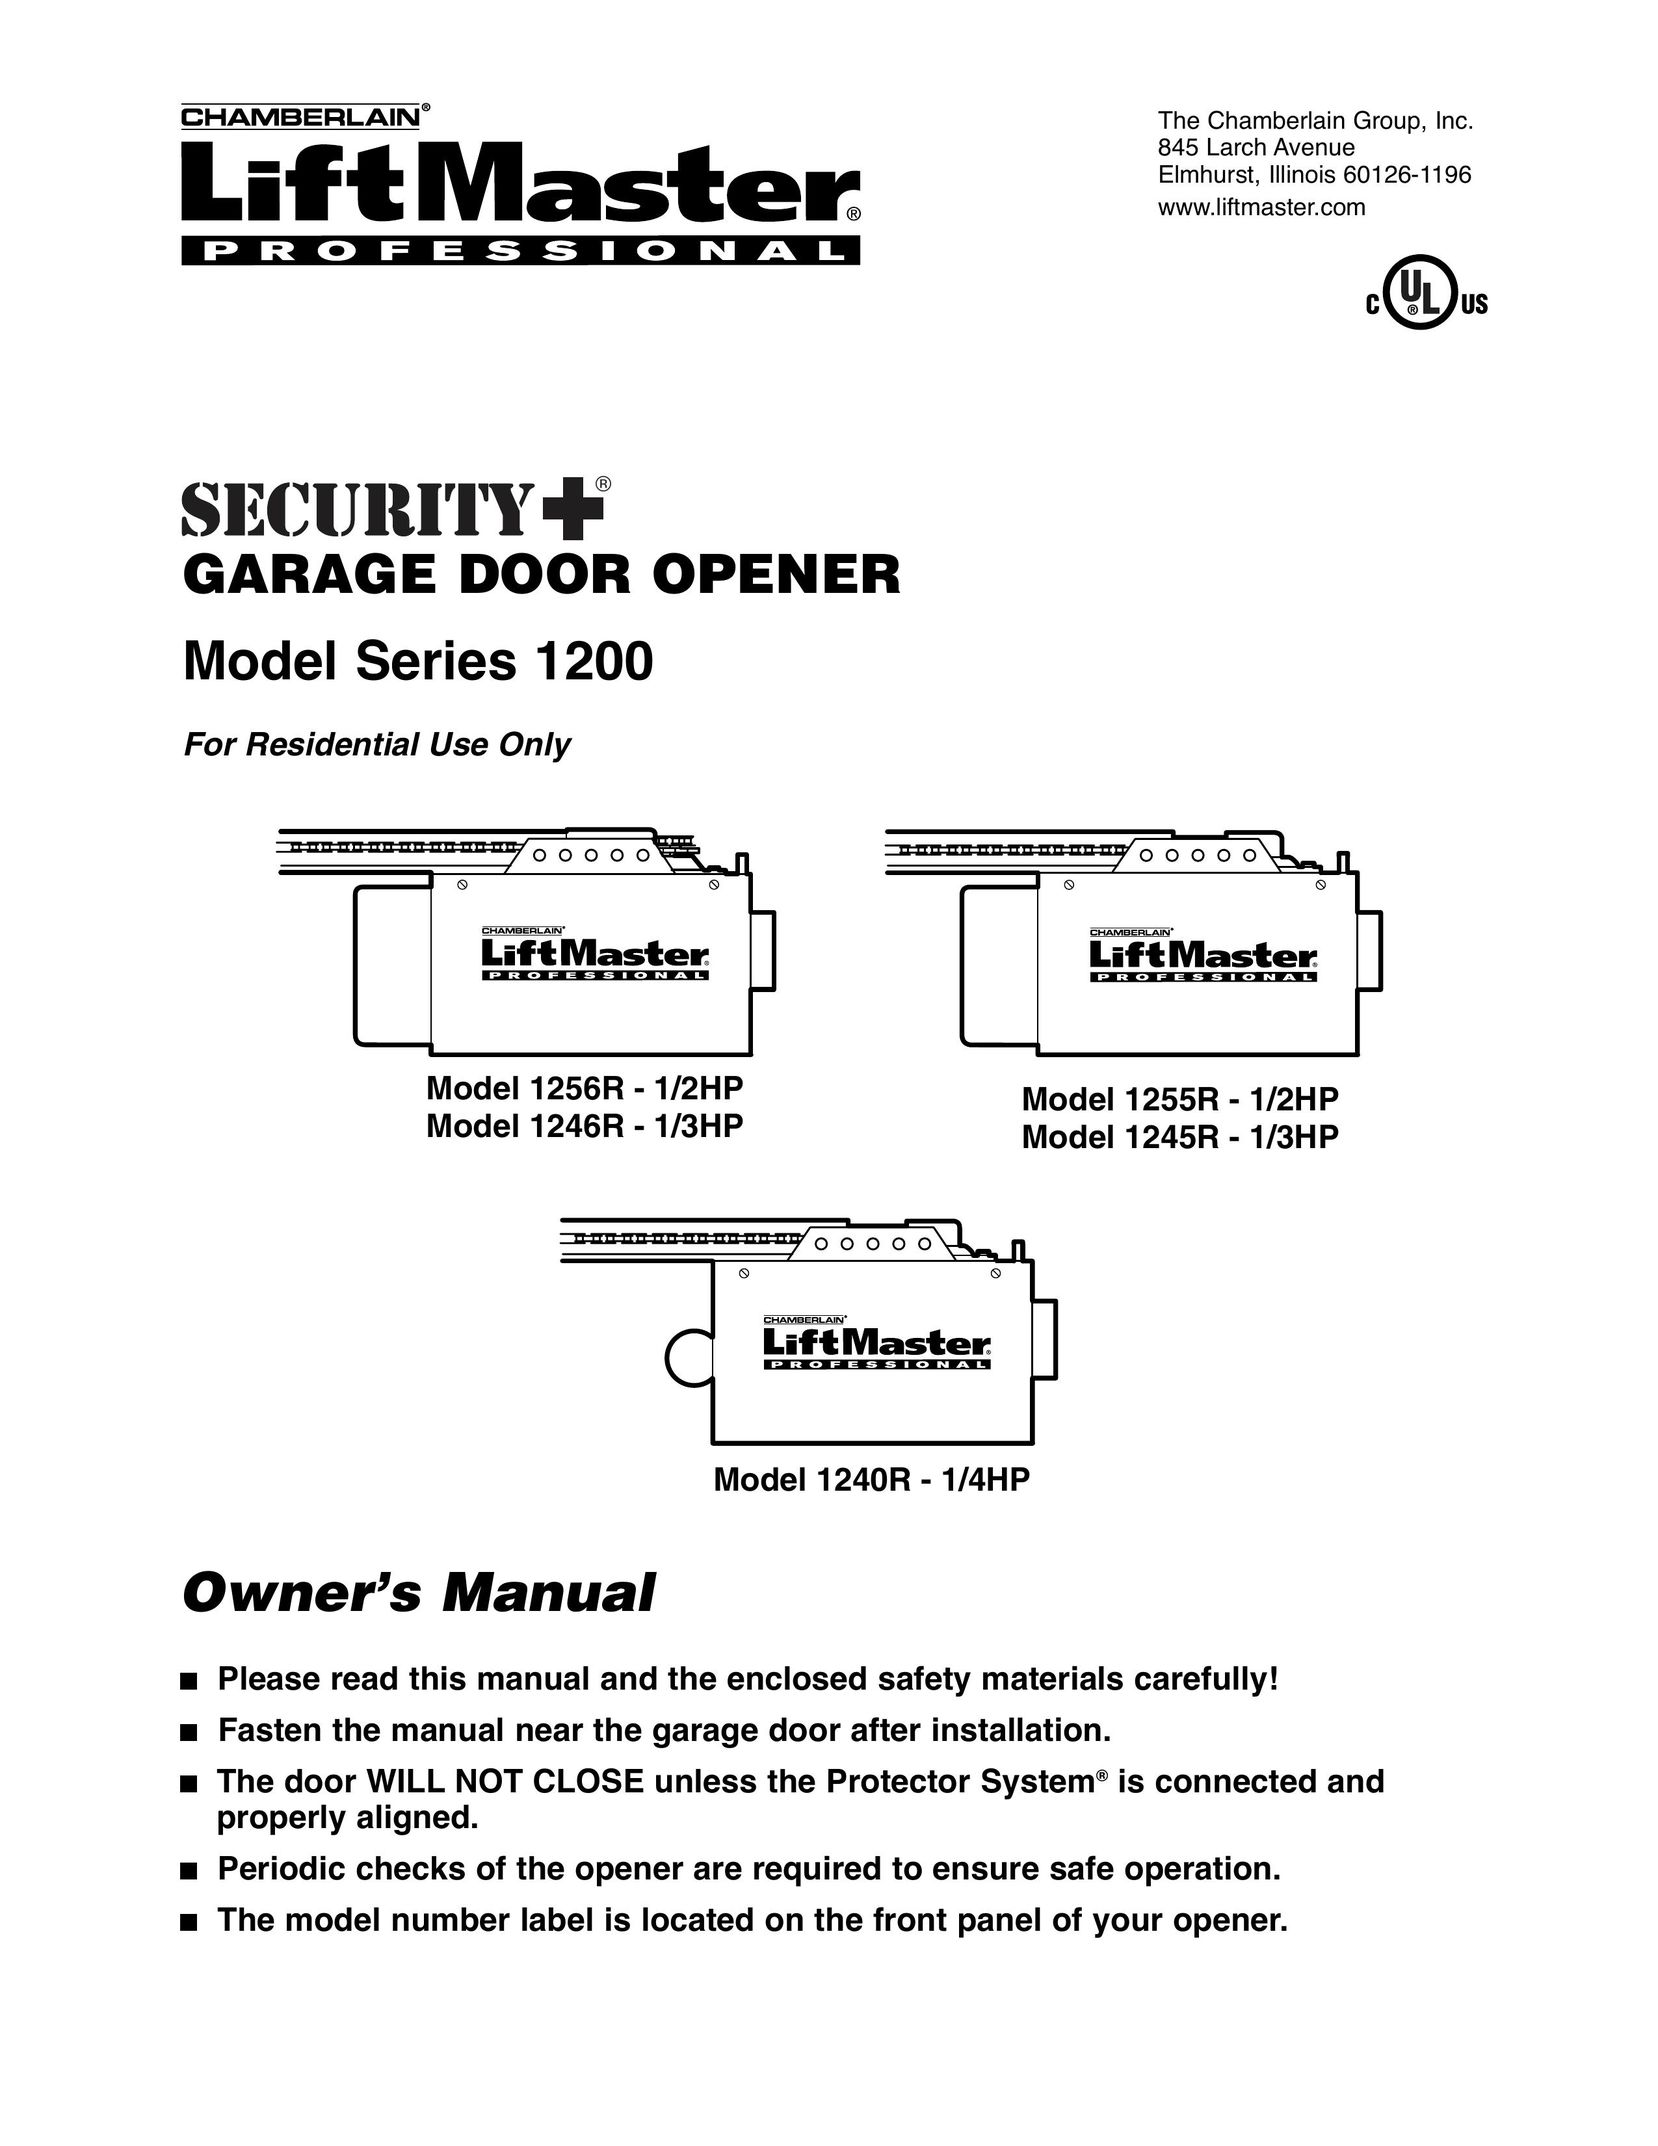 Chamberlain 1240R - 1/4HP Garage Door Opener User Manual